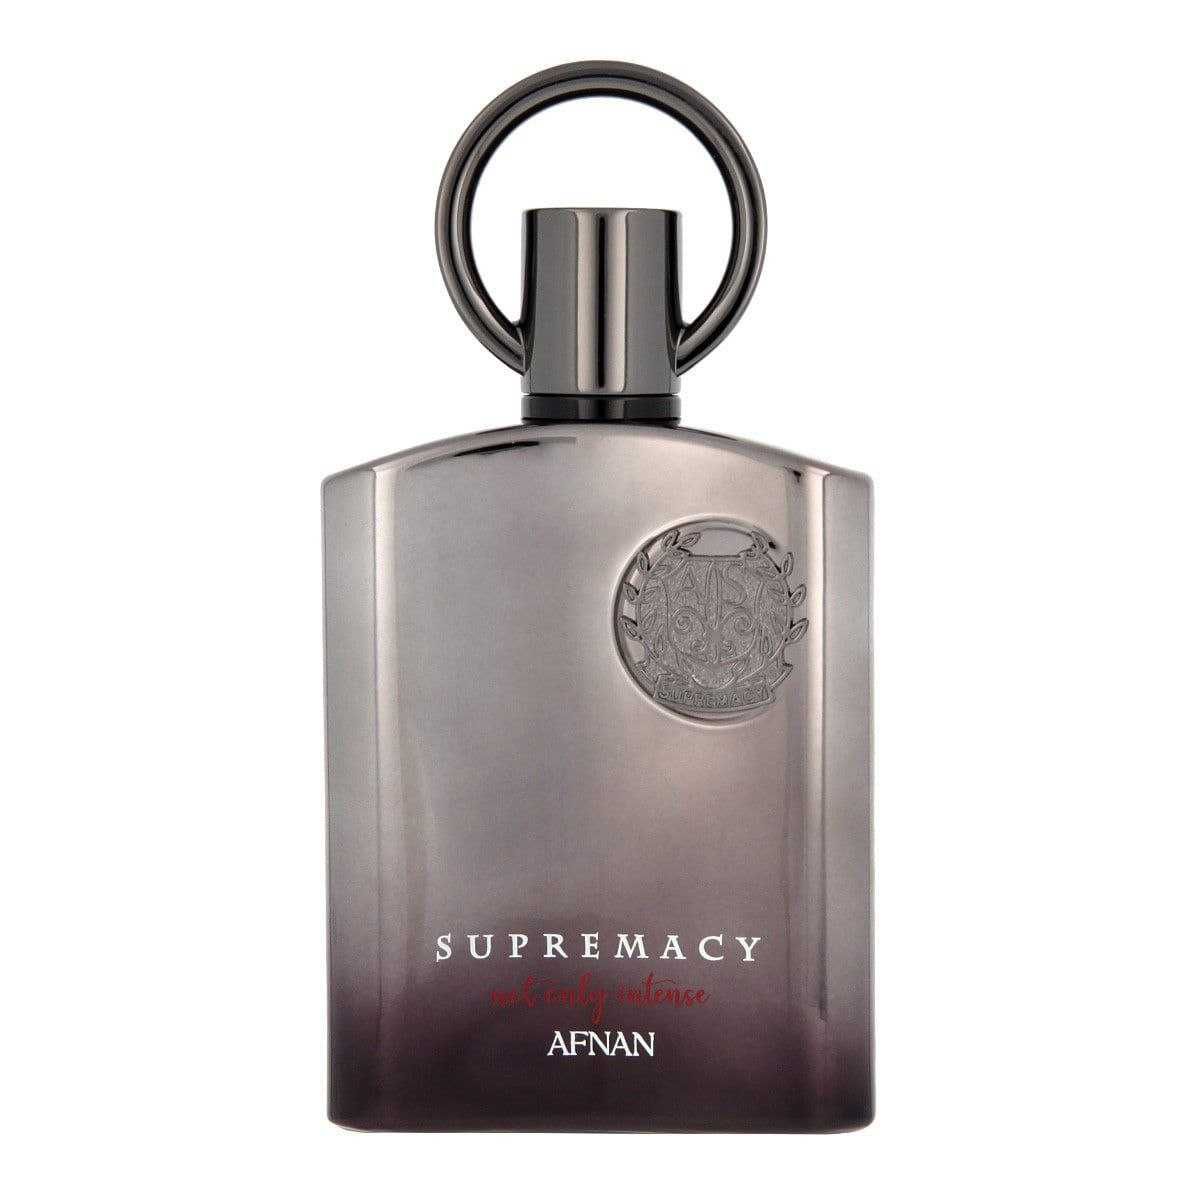 Afnan Supremacy Not Only Intense Extrait De Parfum 100ml ORIGINAL